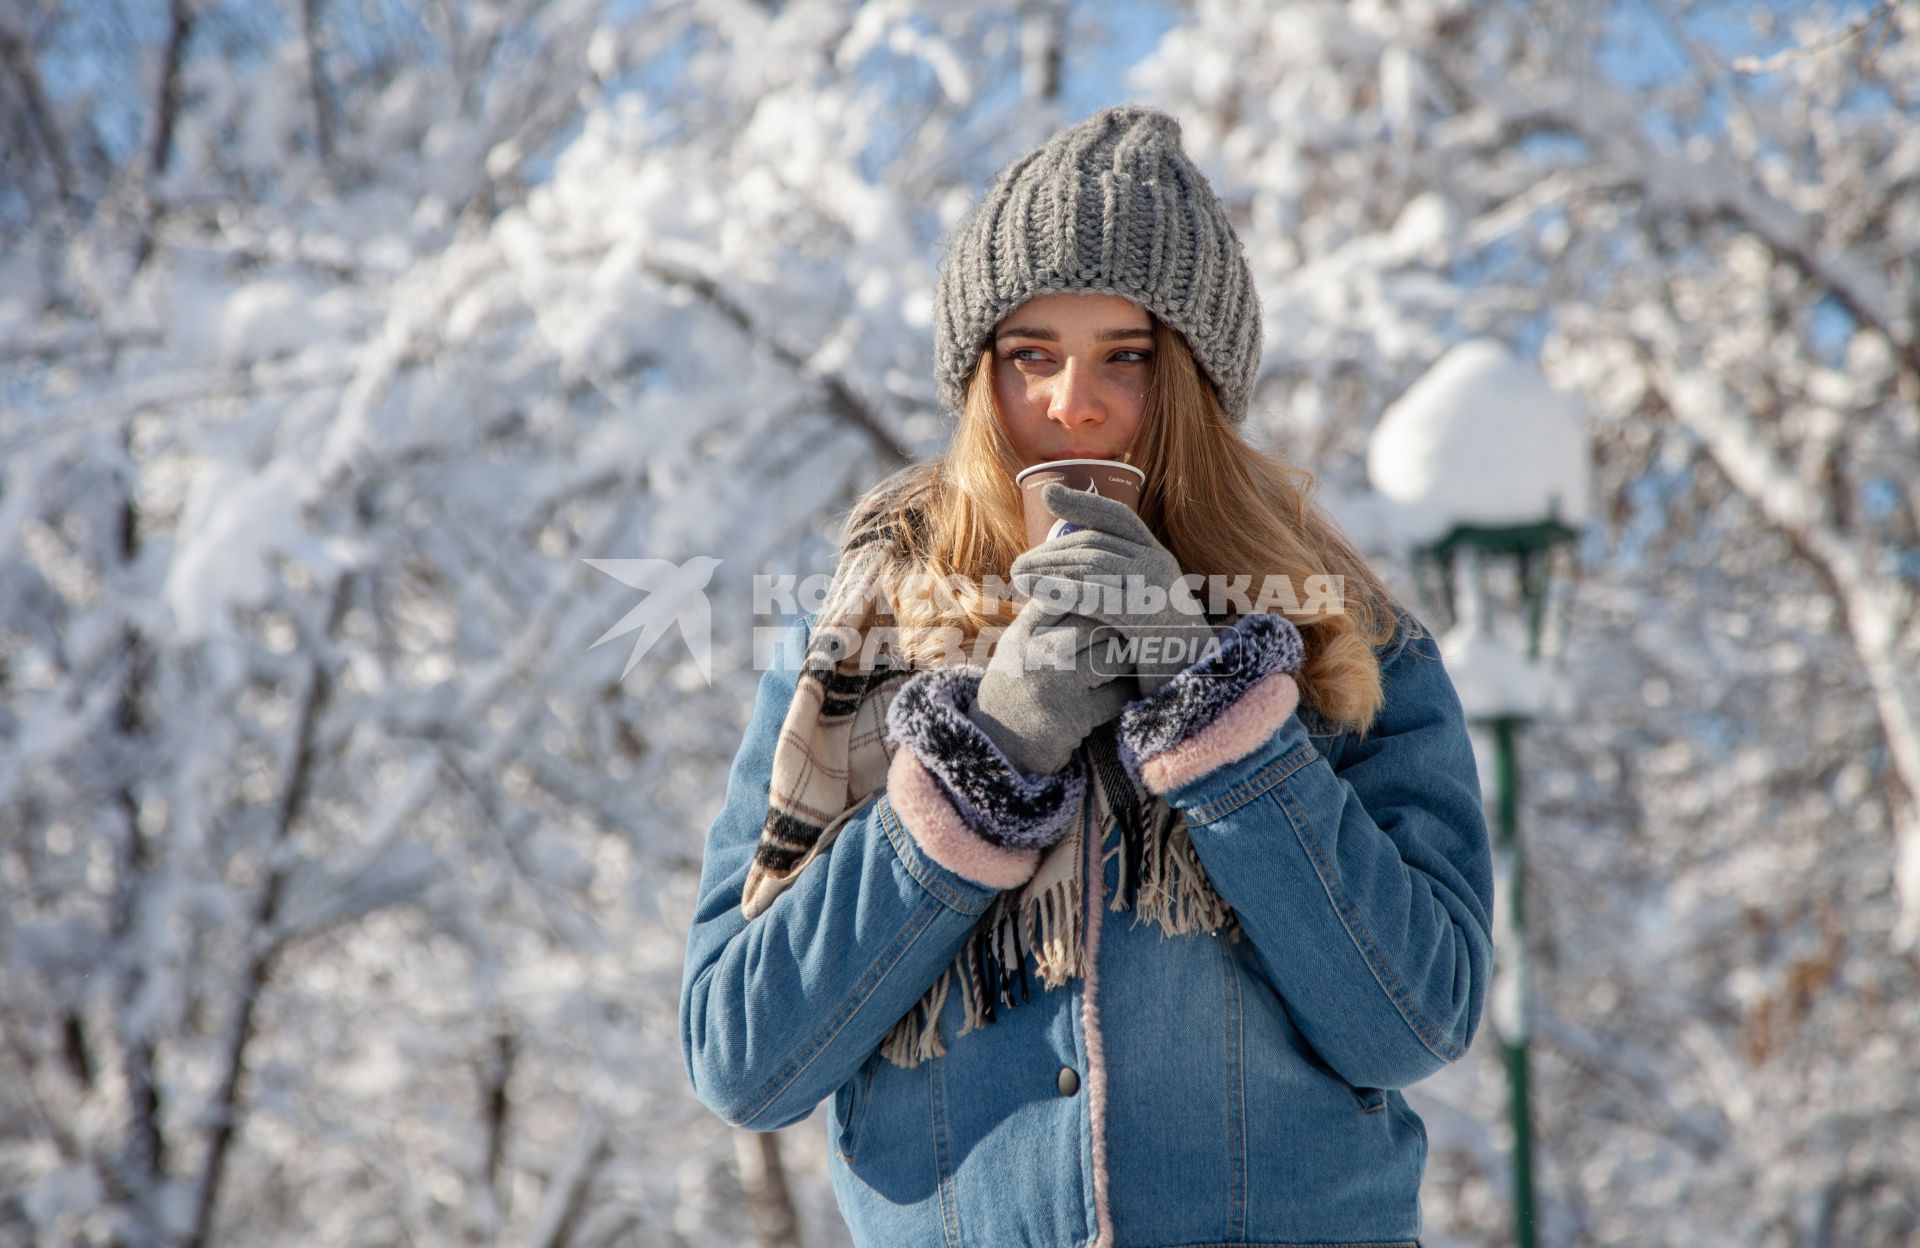 Пермь.  Девушка пьет кофе на улице зимой.